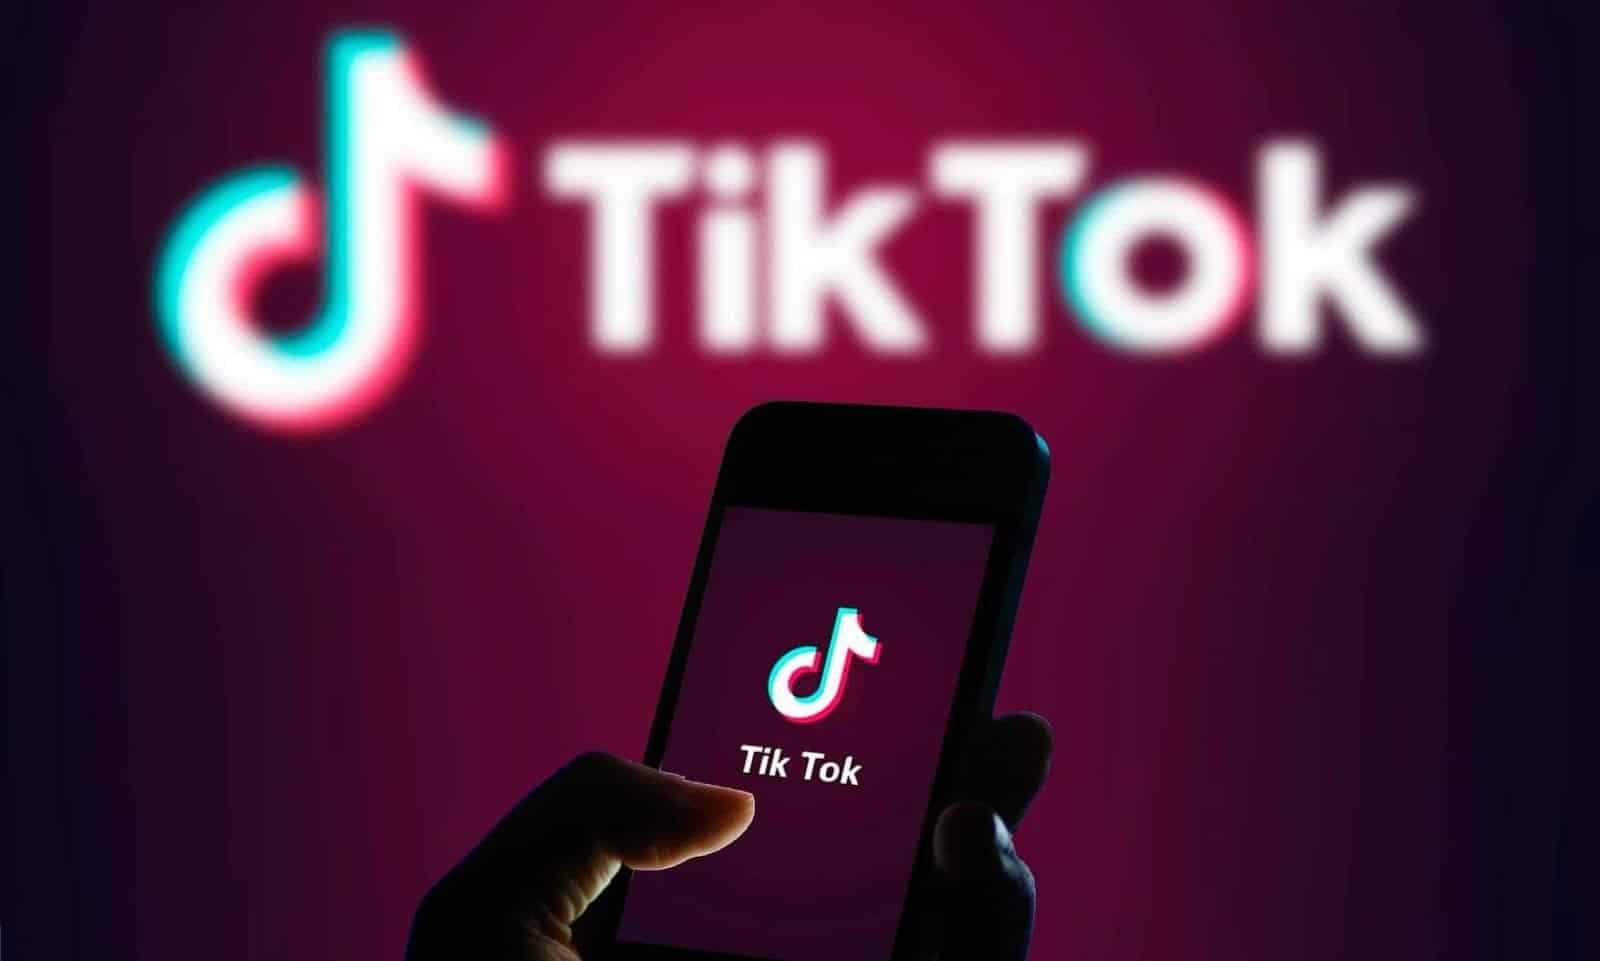 أفضل التطبيقات والمواقع الأساسية لمحبي TikTok ولكل المبدعين - هواتف